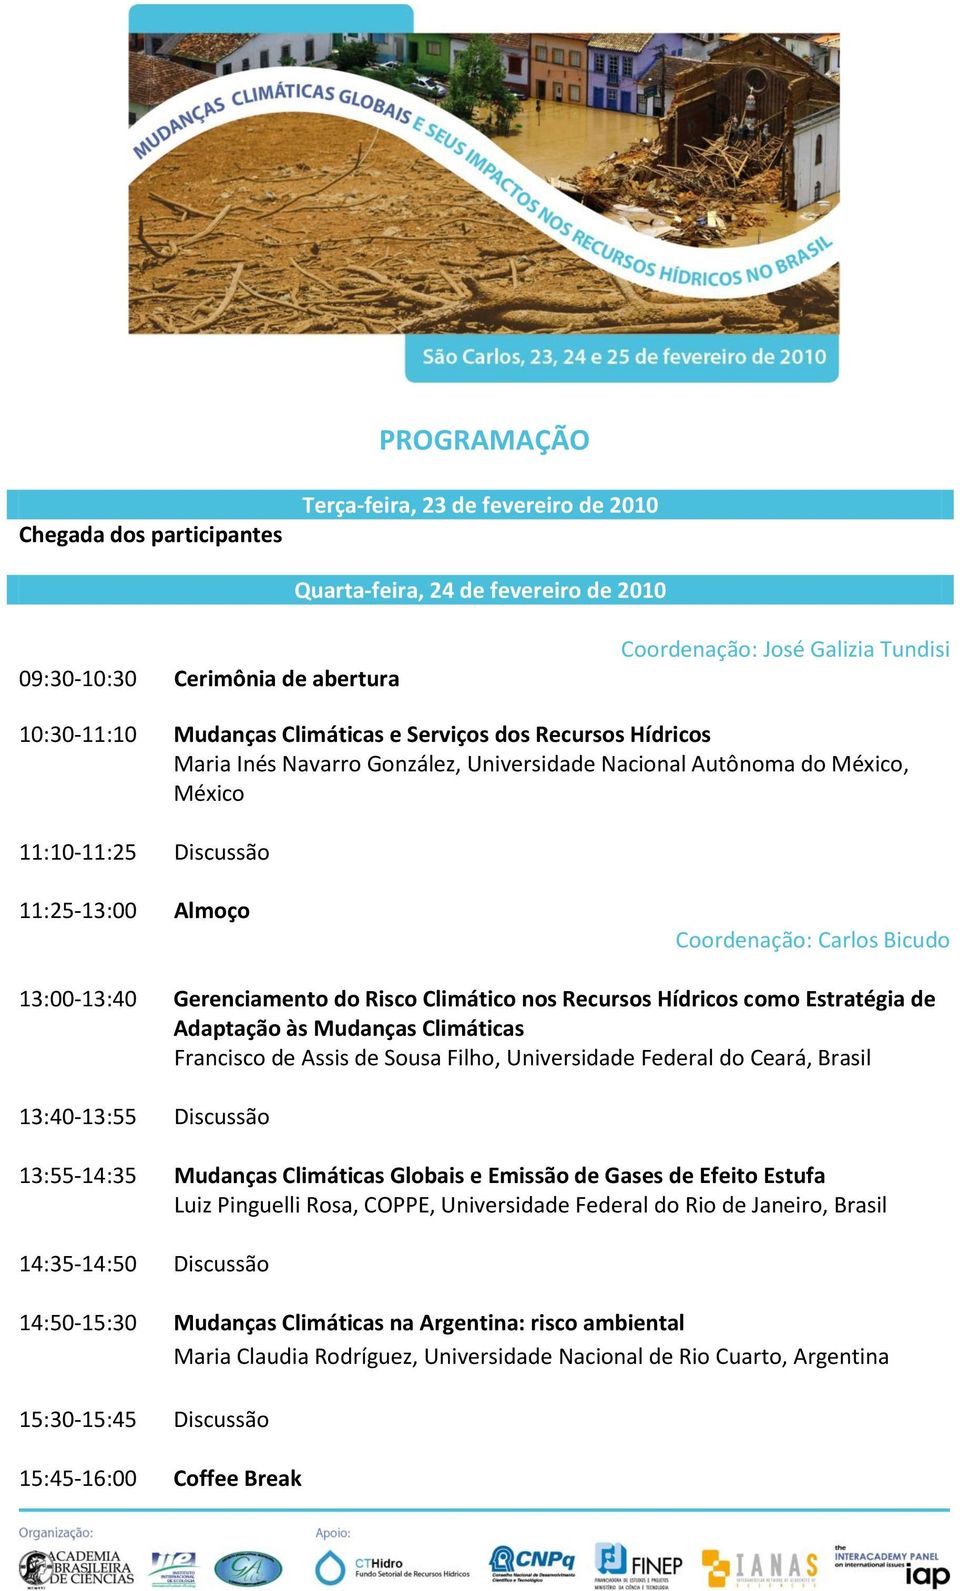 13:00-13:40 Gerenciamento do Risco Climático nos Recursos Hídricos como Estratégia de Adaptação às Mudanças Climáticas Francisco de Assis de Sousa Filho, Universidade Federal do Ceará, Brasil